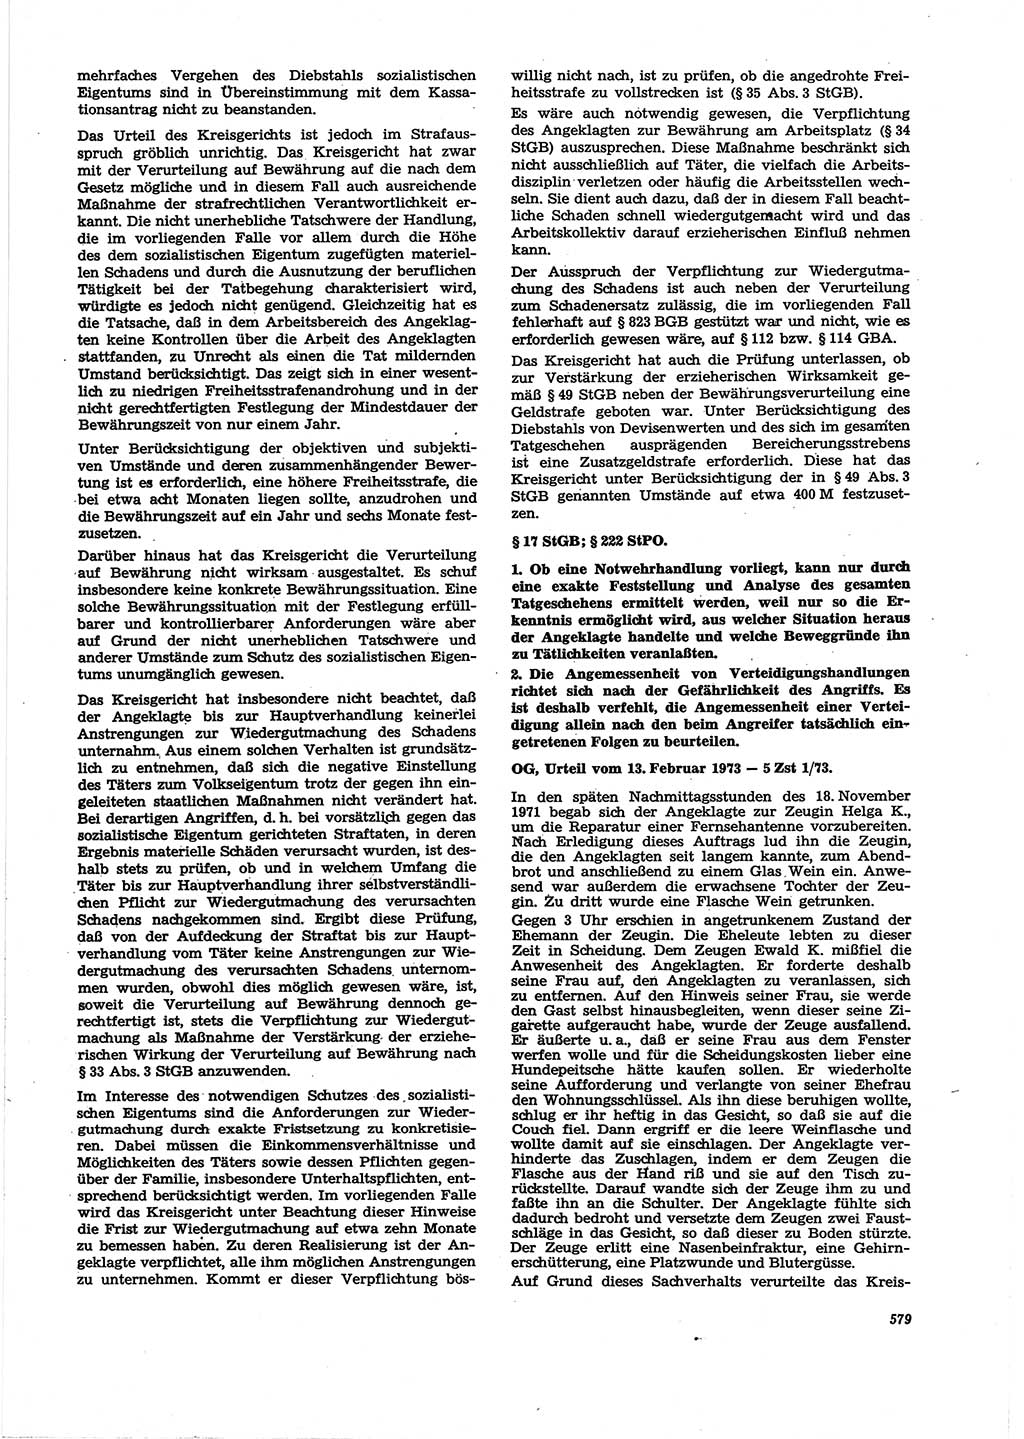 Neue Justiz (NJ), Zeitschrift für Recht und Rechtswissenschaft [Deutsche Demokratische Republik (DDR)], 27. Jahrgang 1973, Seite 579 (NJ DDR 1973, S. 579)